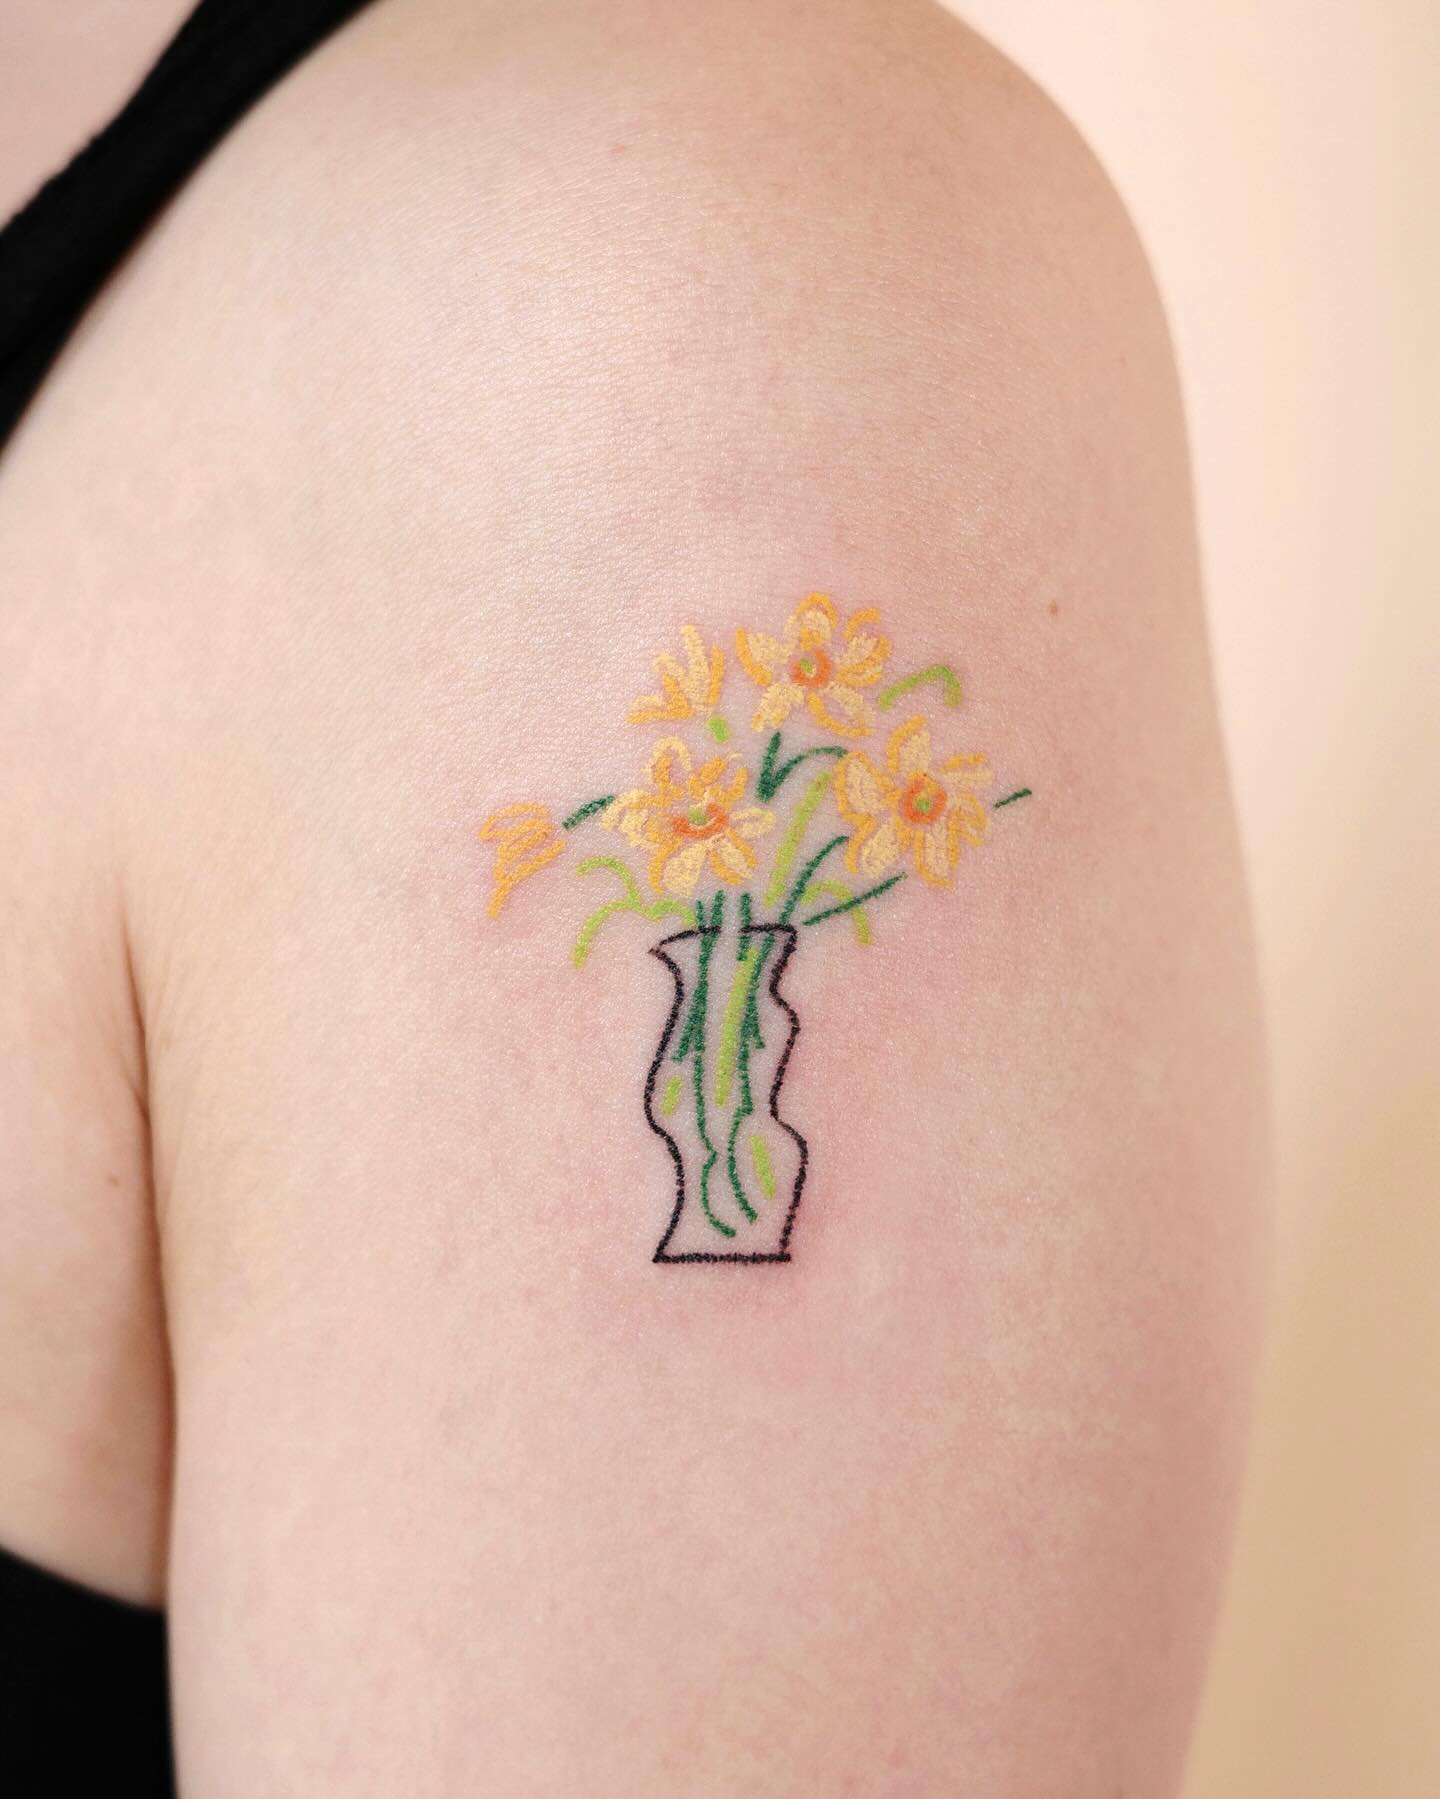 Vase tattoo ideas by yeguclub